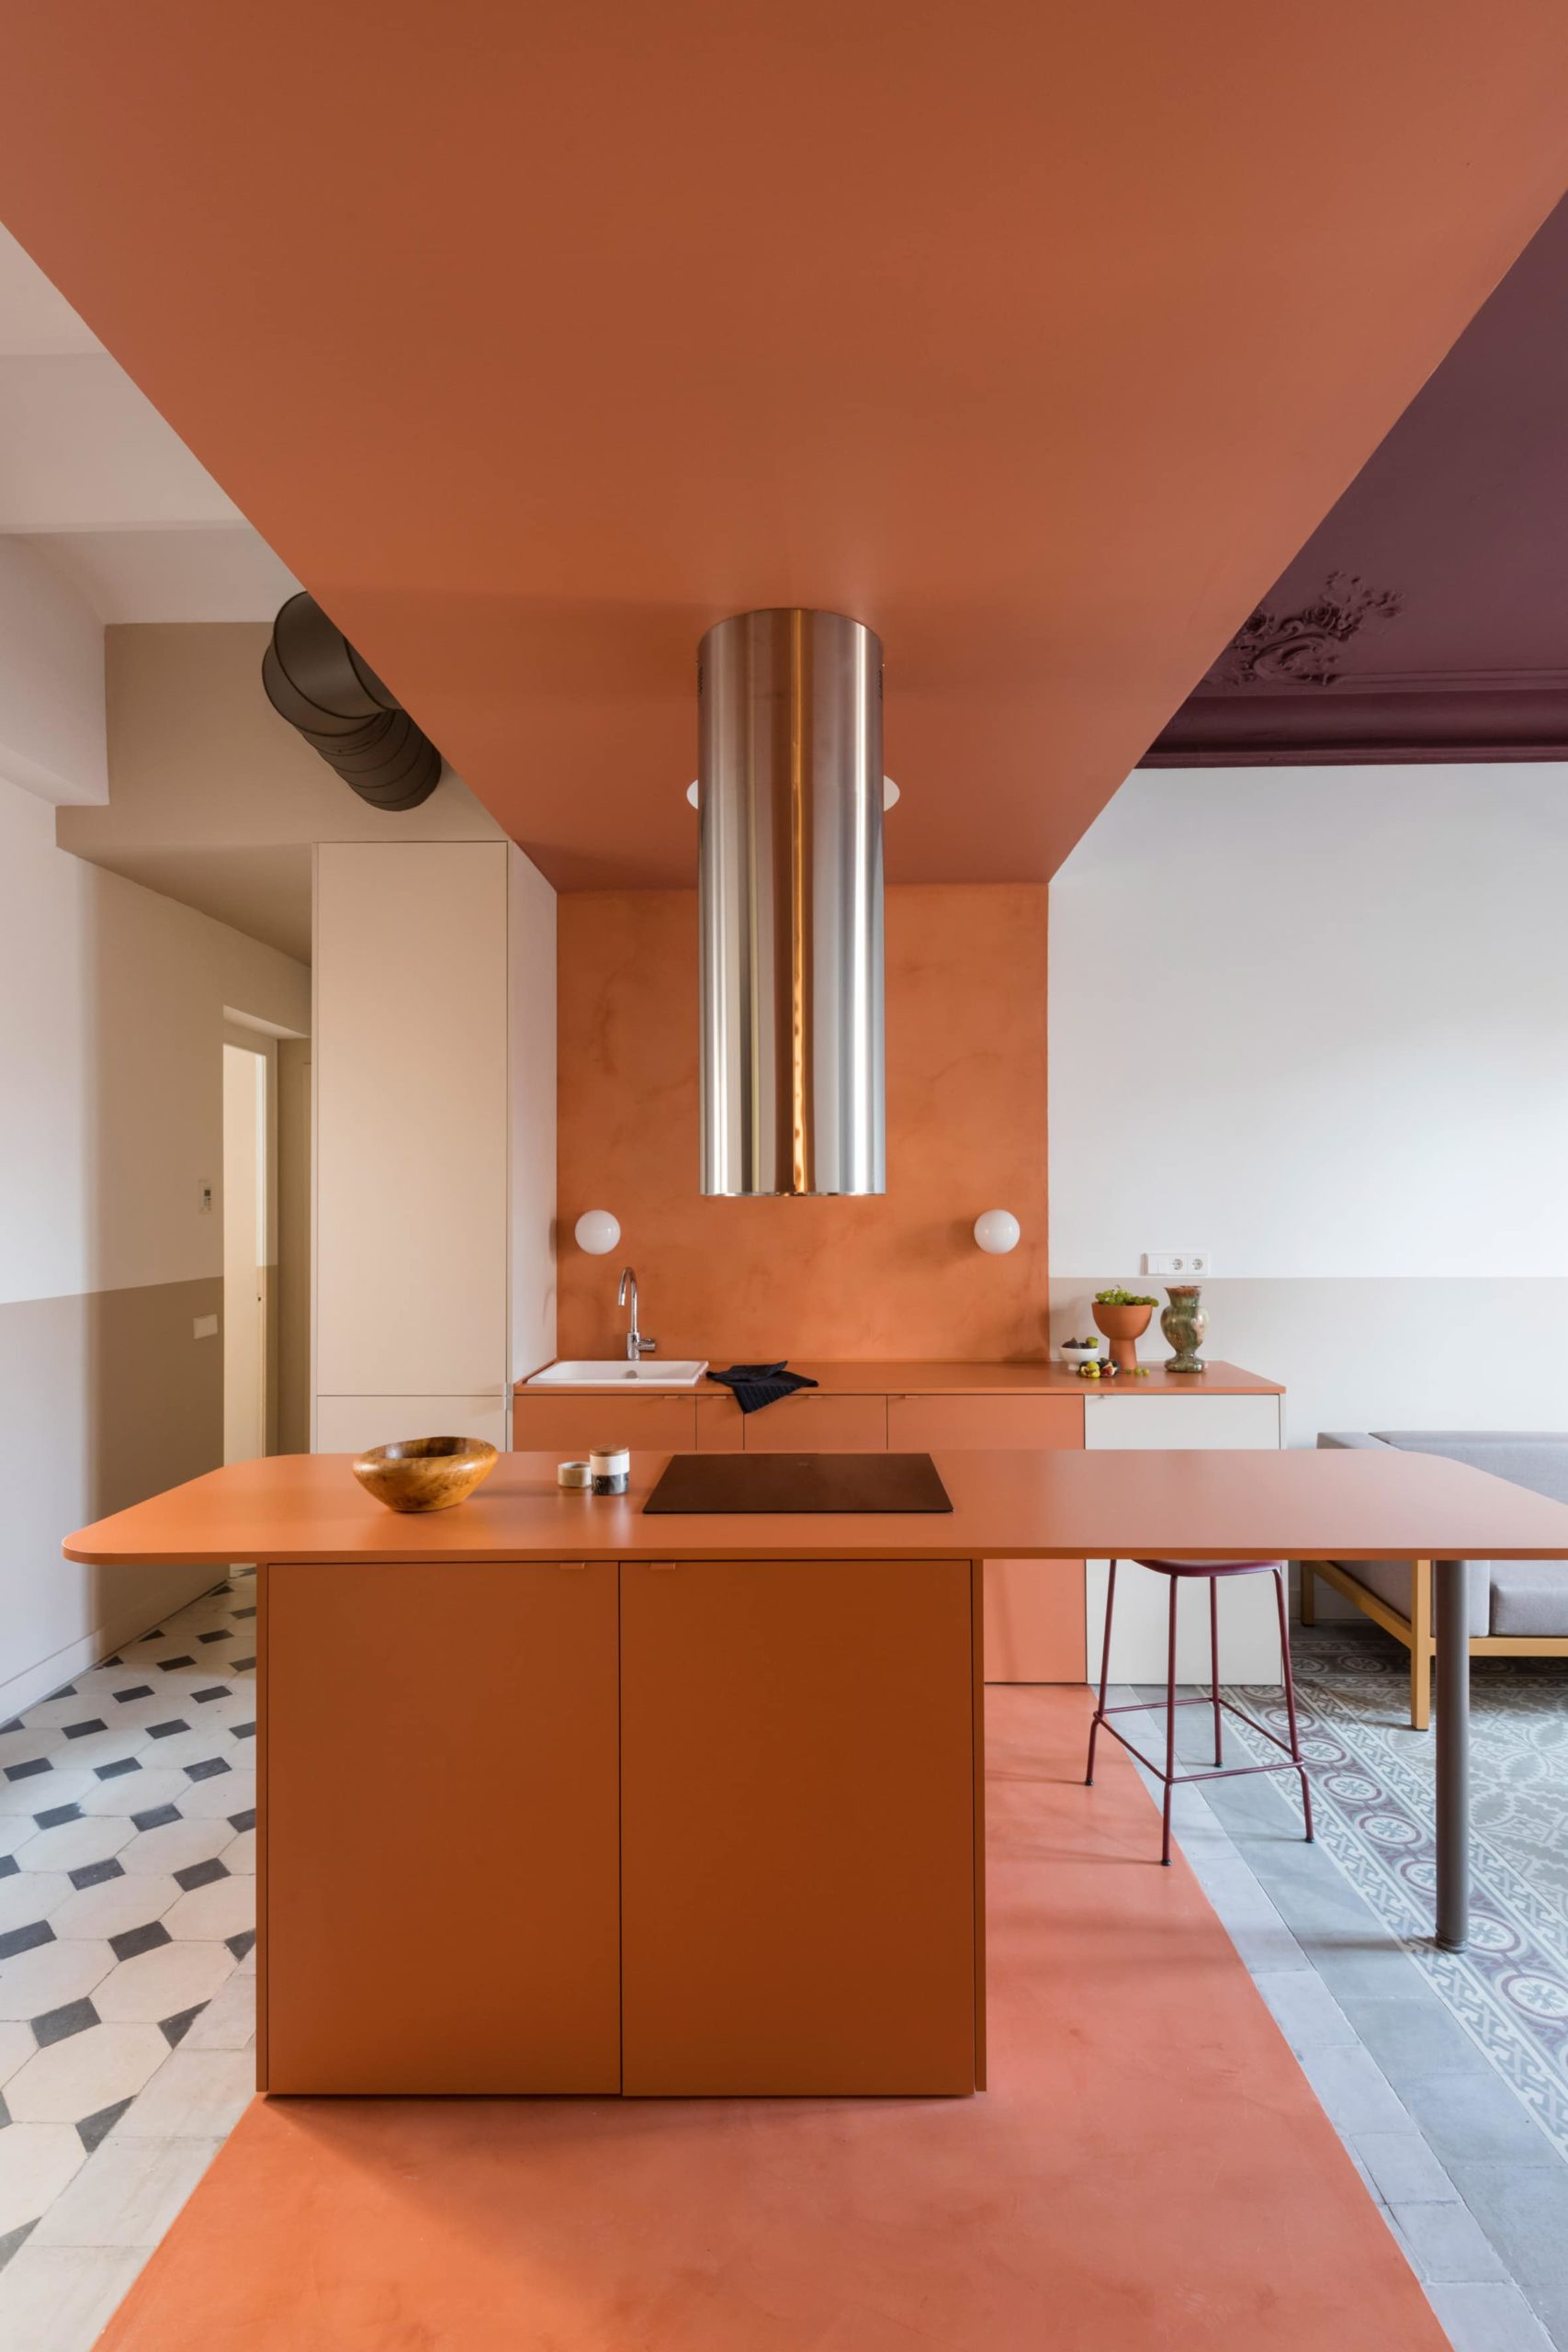 Klinker Apartment - Dos mais vibrantes aos mais sóbrios, estes ambientes têm estilo de sobra